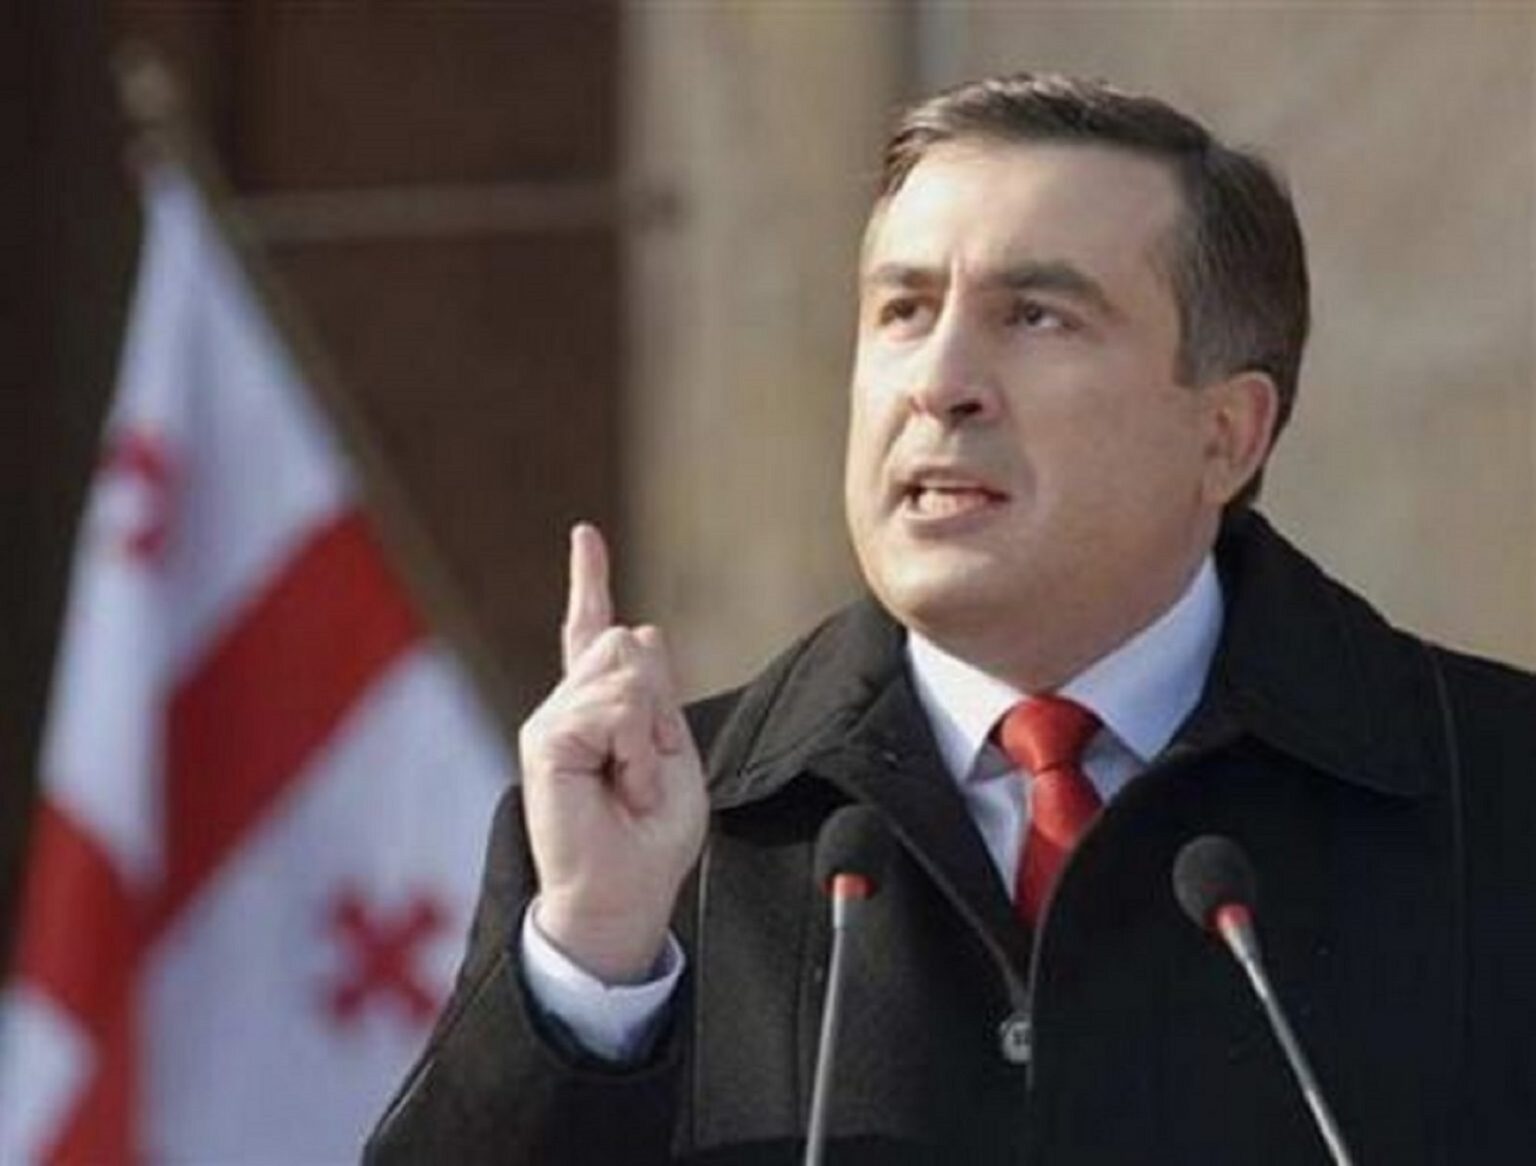 Diagnostic șoc. Președintele georgian Saakașvili are o demență care evoluează rapid. Opinia specialistului